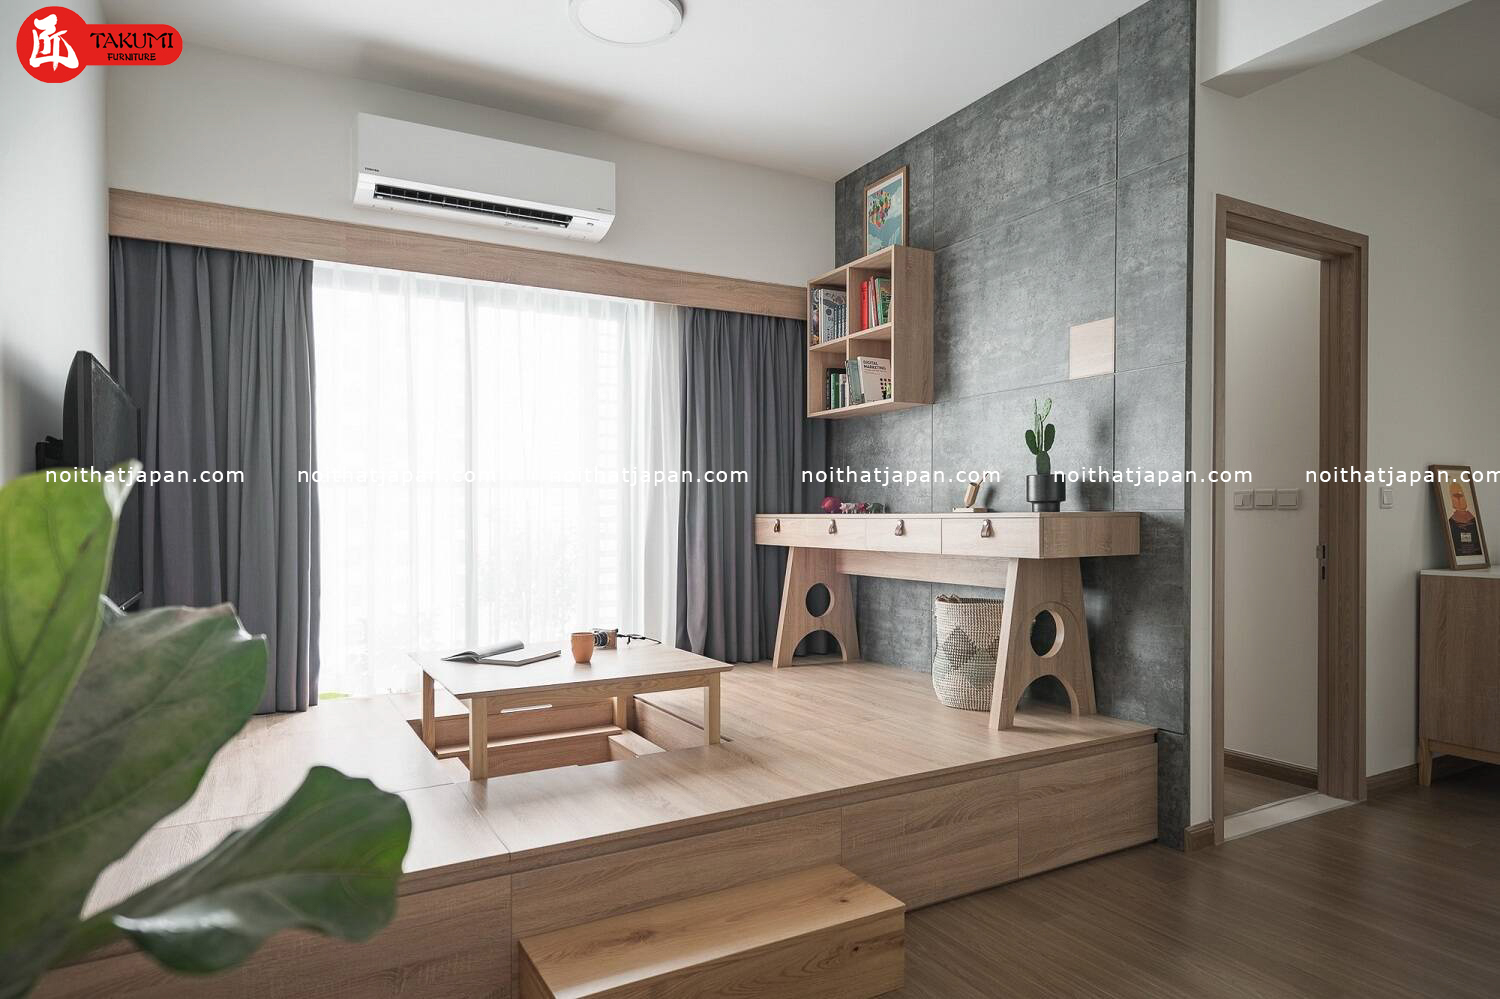 Phong cách thiết kế nhà Nhật Bản phong cách tối giản là một nét đẹp đặc trưng không chỉ ở đất nước này mà còn được các nước khác hưởng ứng. Việc học tập cách thiết kế nhà Nhật Bản phong cách tối giản sẽ giúp cho bạn hiểu rõ hơn về cách phối hợp đồ nội thất và tận dụng không gian. Hãy khám phá cùng chúng tôi để hiểu rõ hơn về phong cách này.